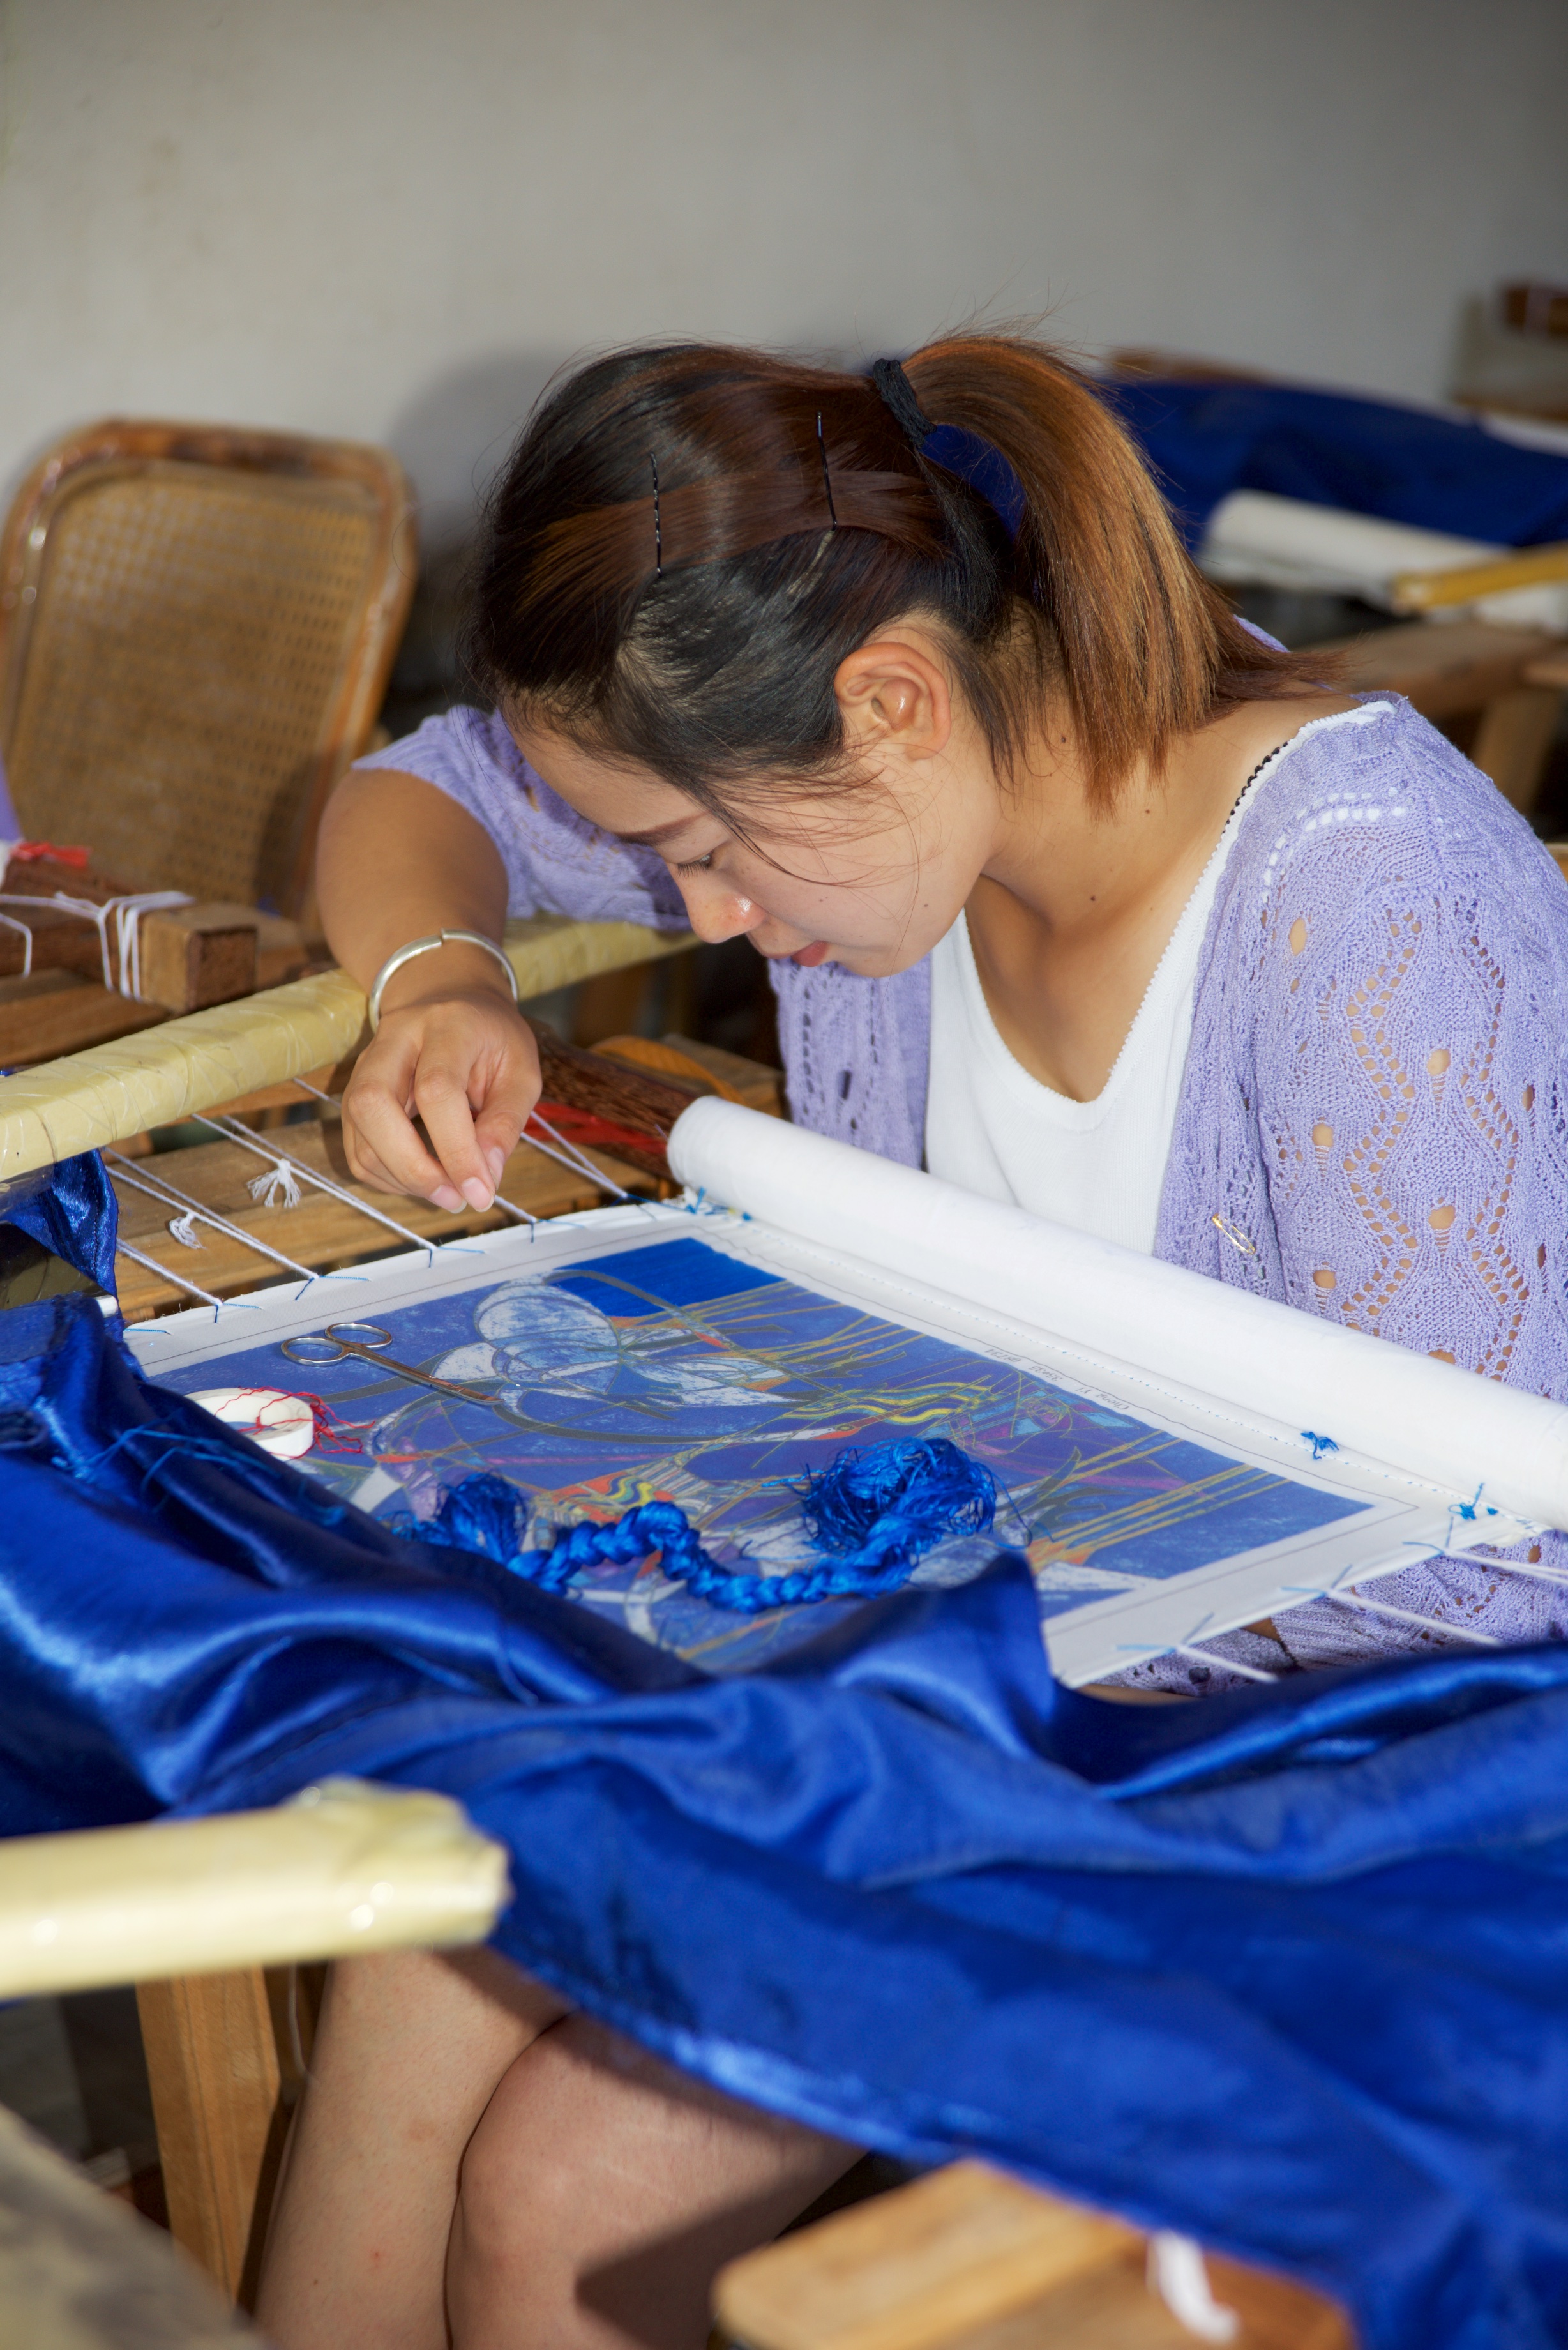  Girl embroidering, Embroidery school, Bai village, Dali 